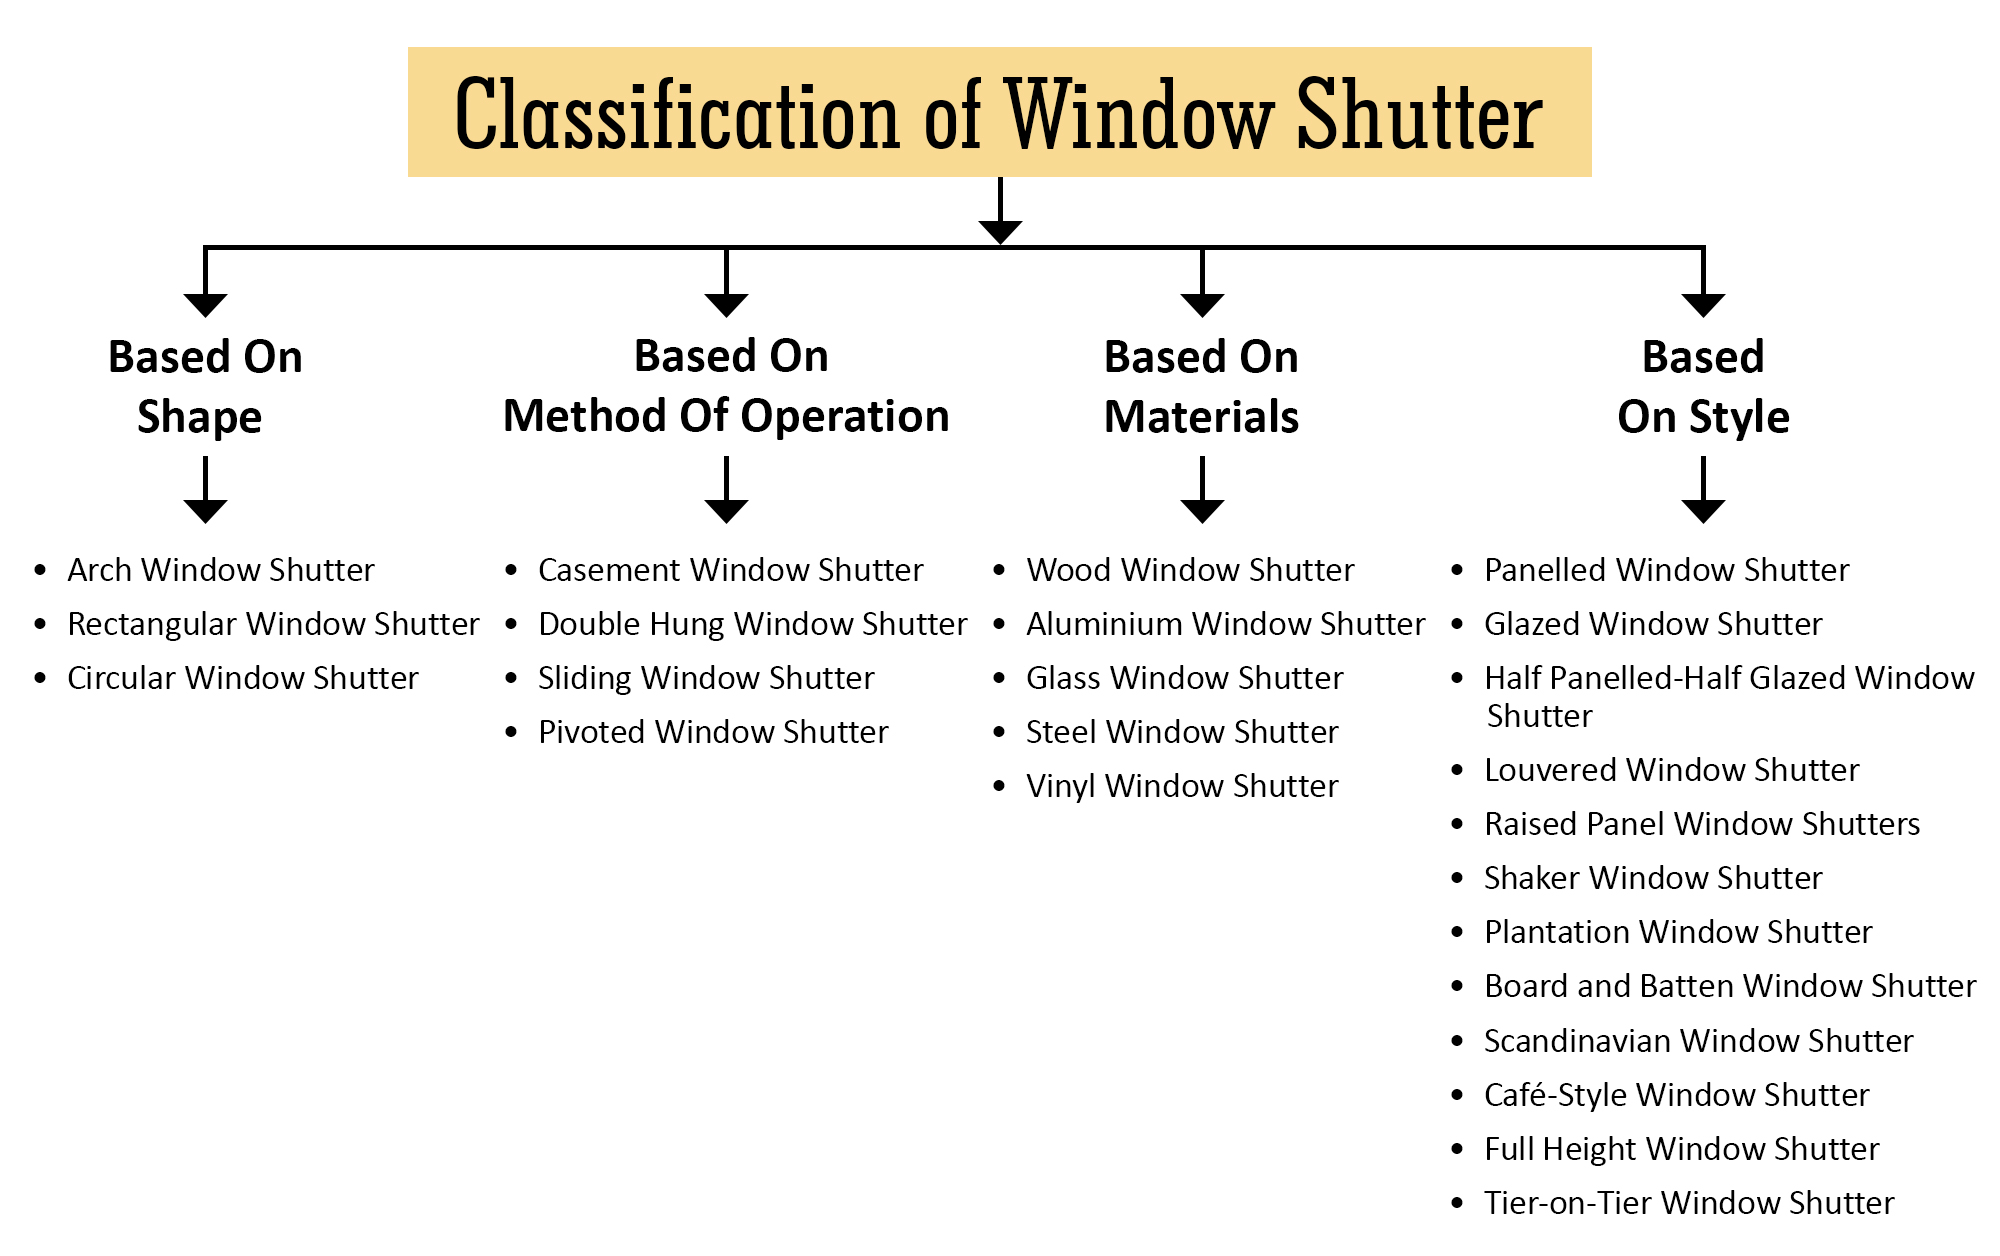 Classification of Window Shutters